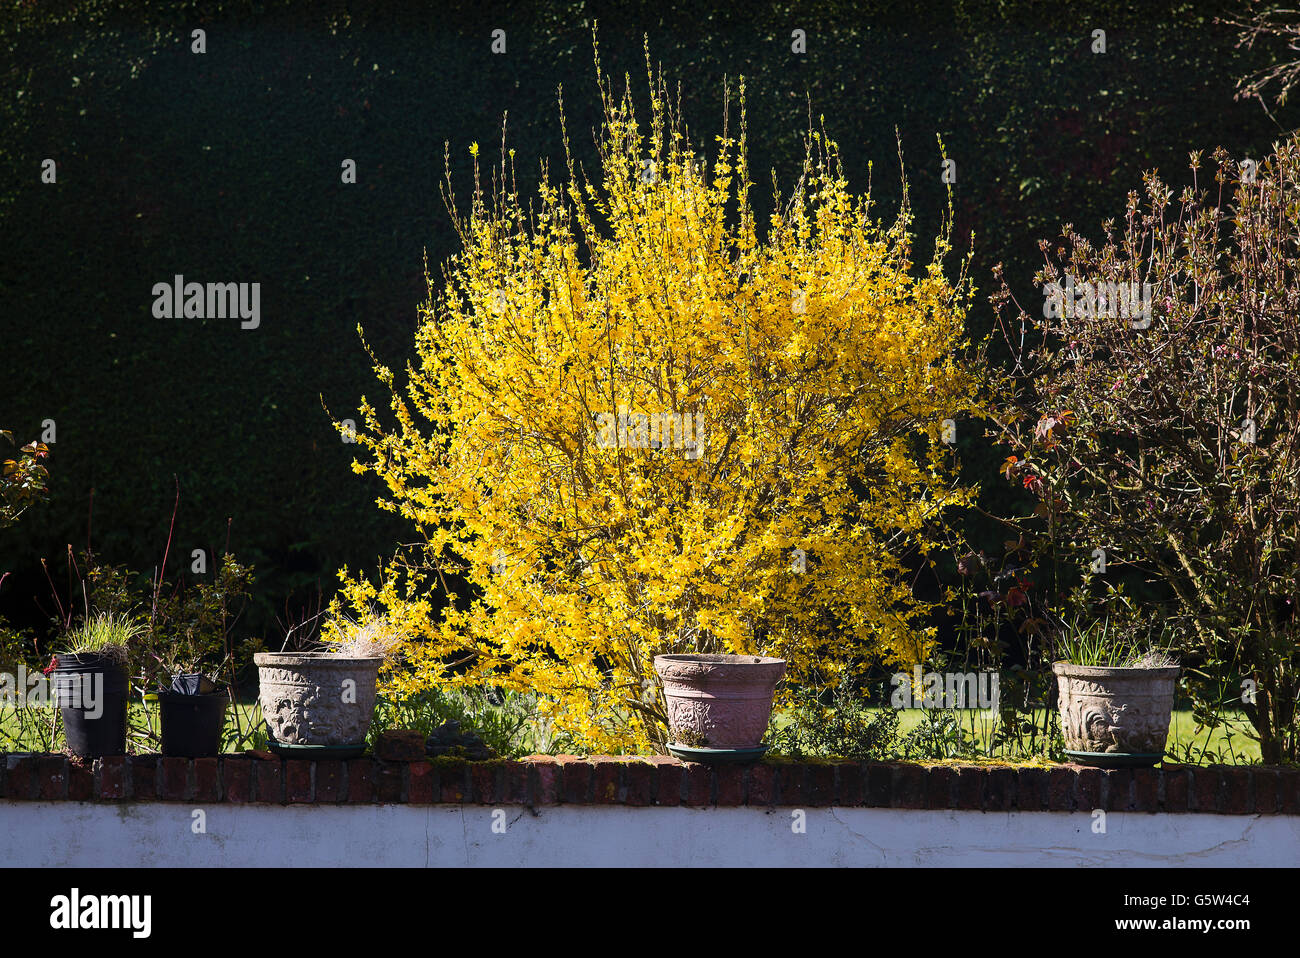 Forsythia shrub in full flower Stock Photo